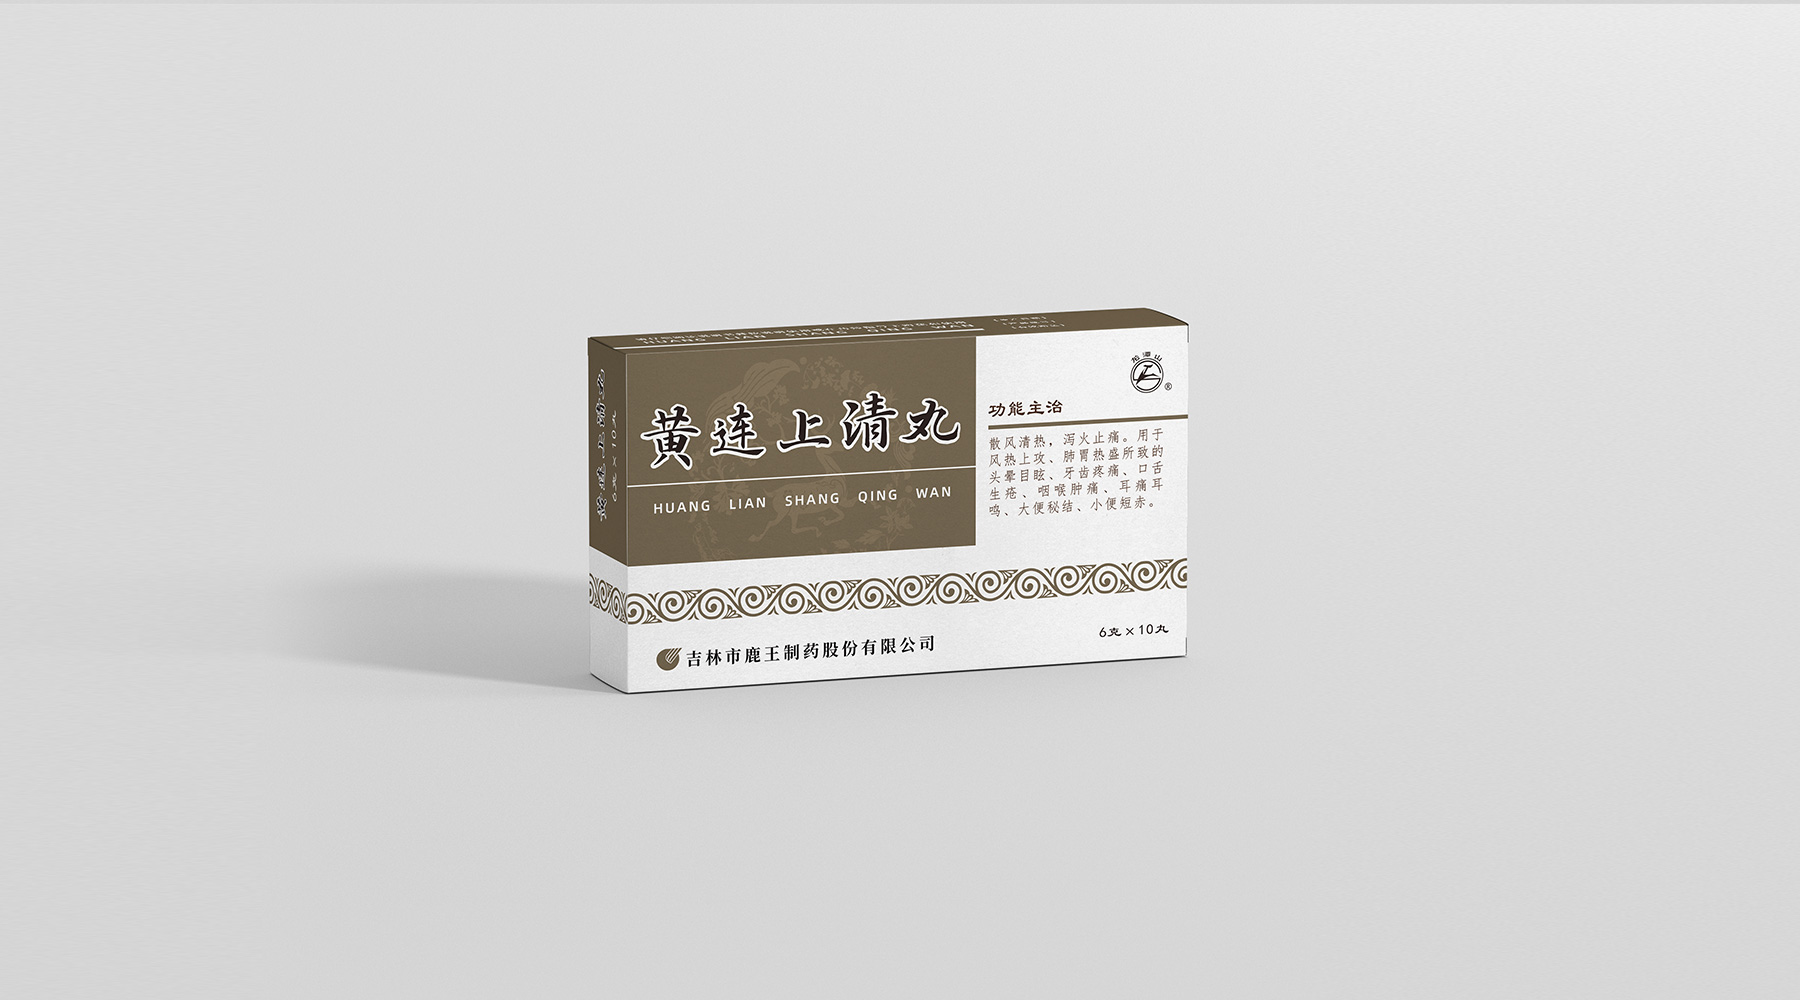 鹿王-中国色药盒系列_06.jpg